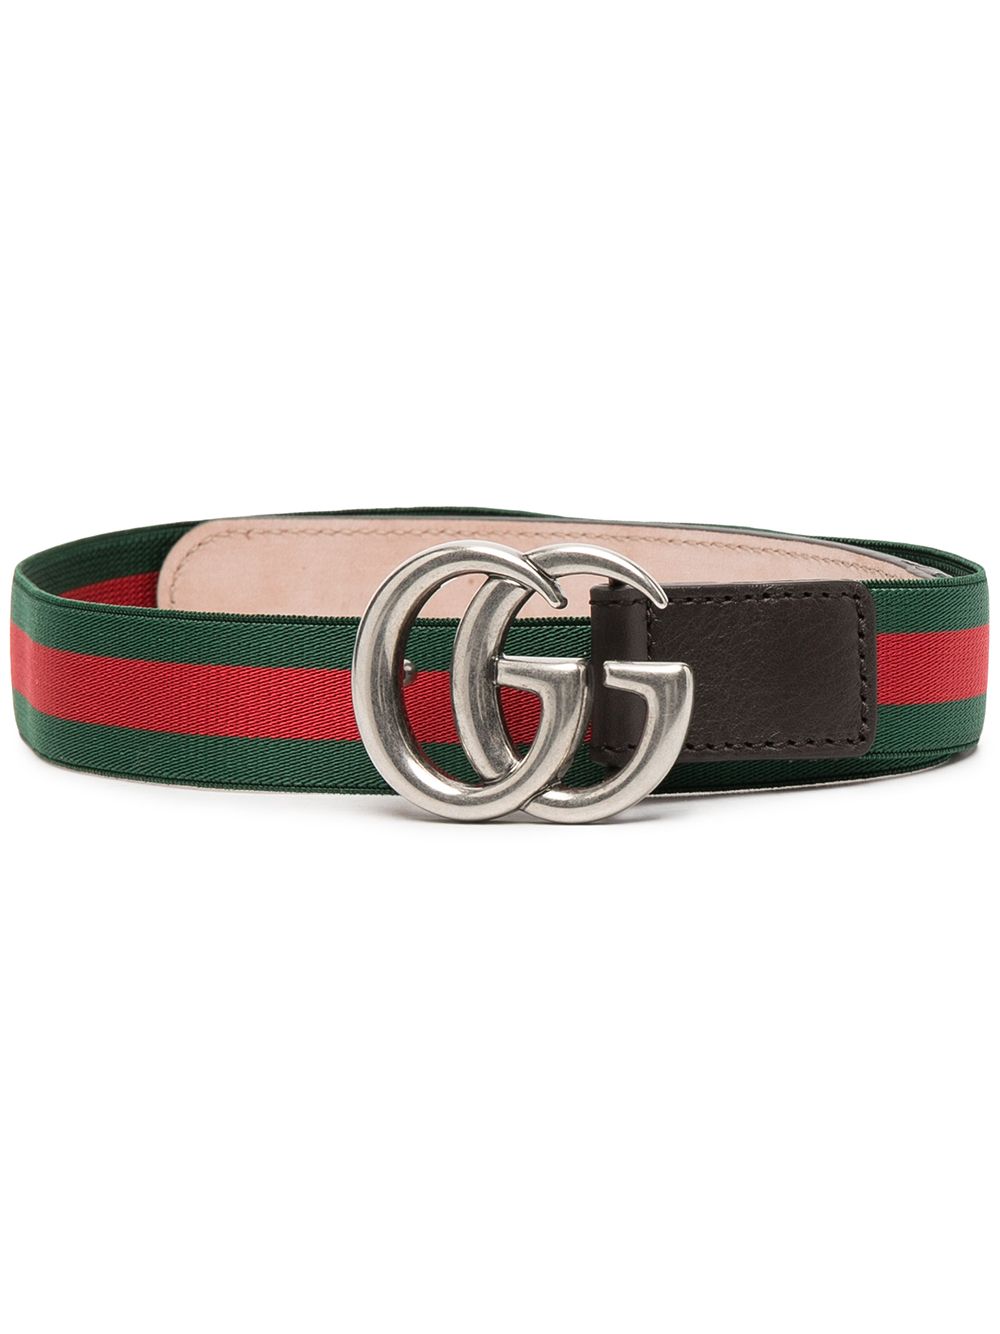 Cintura verde e rossa per bambini con logo